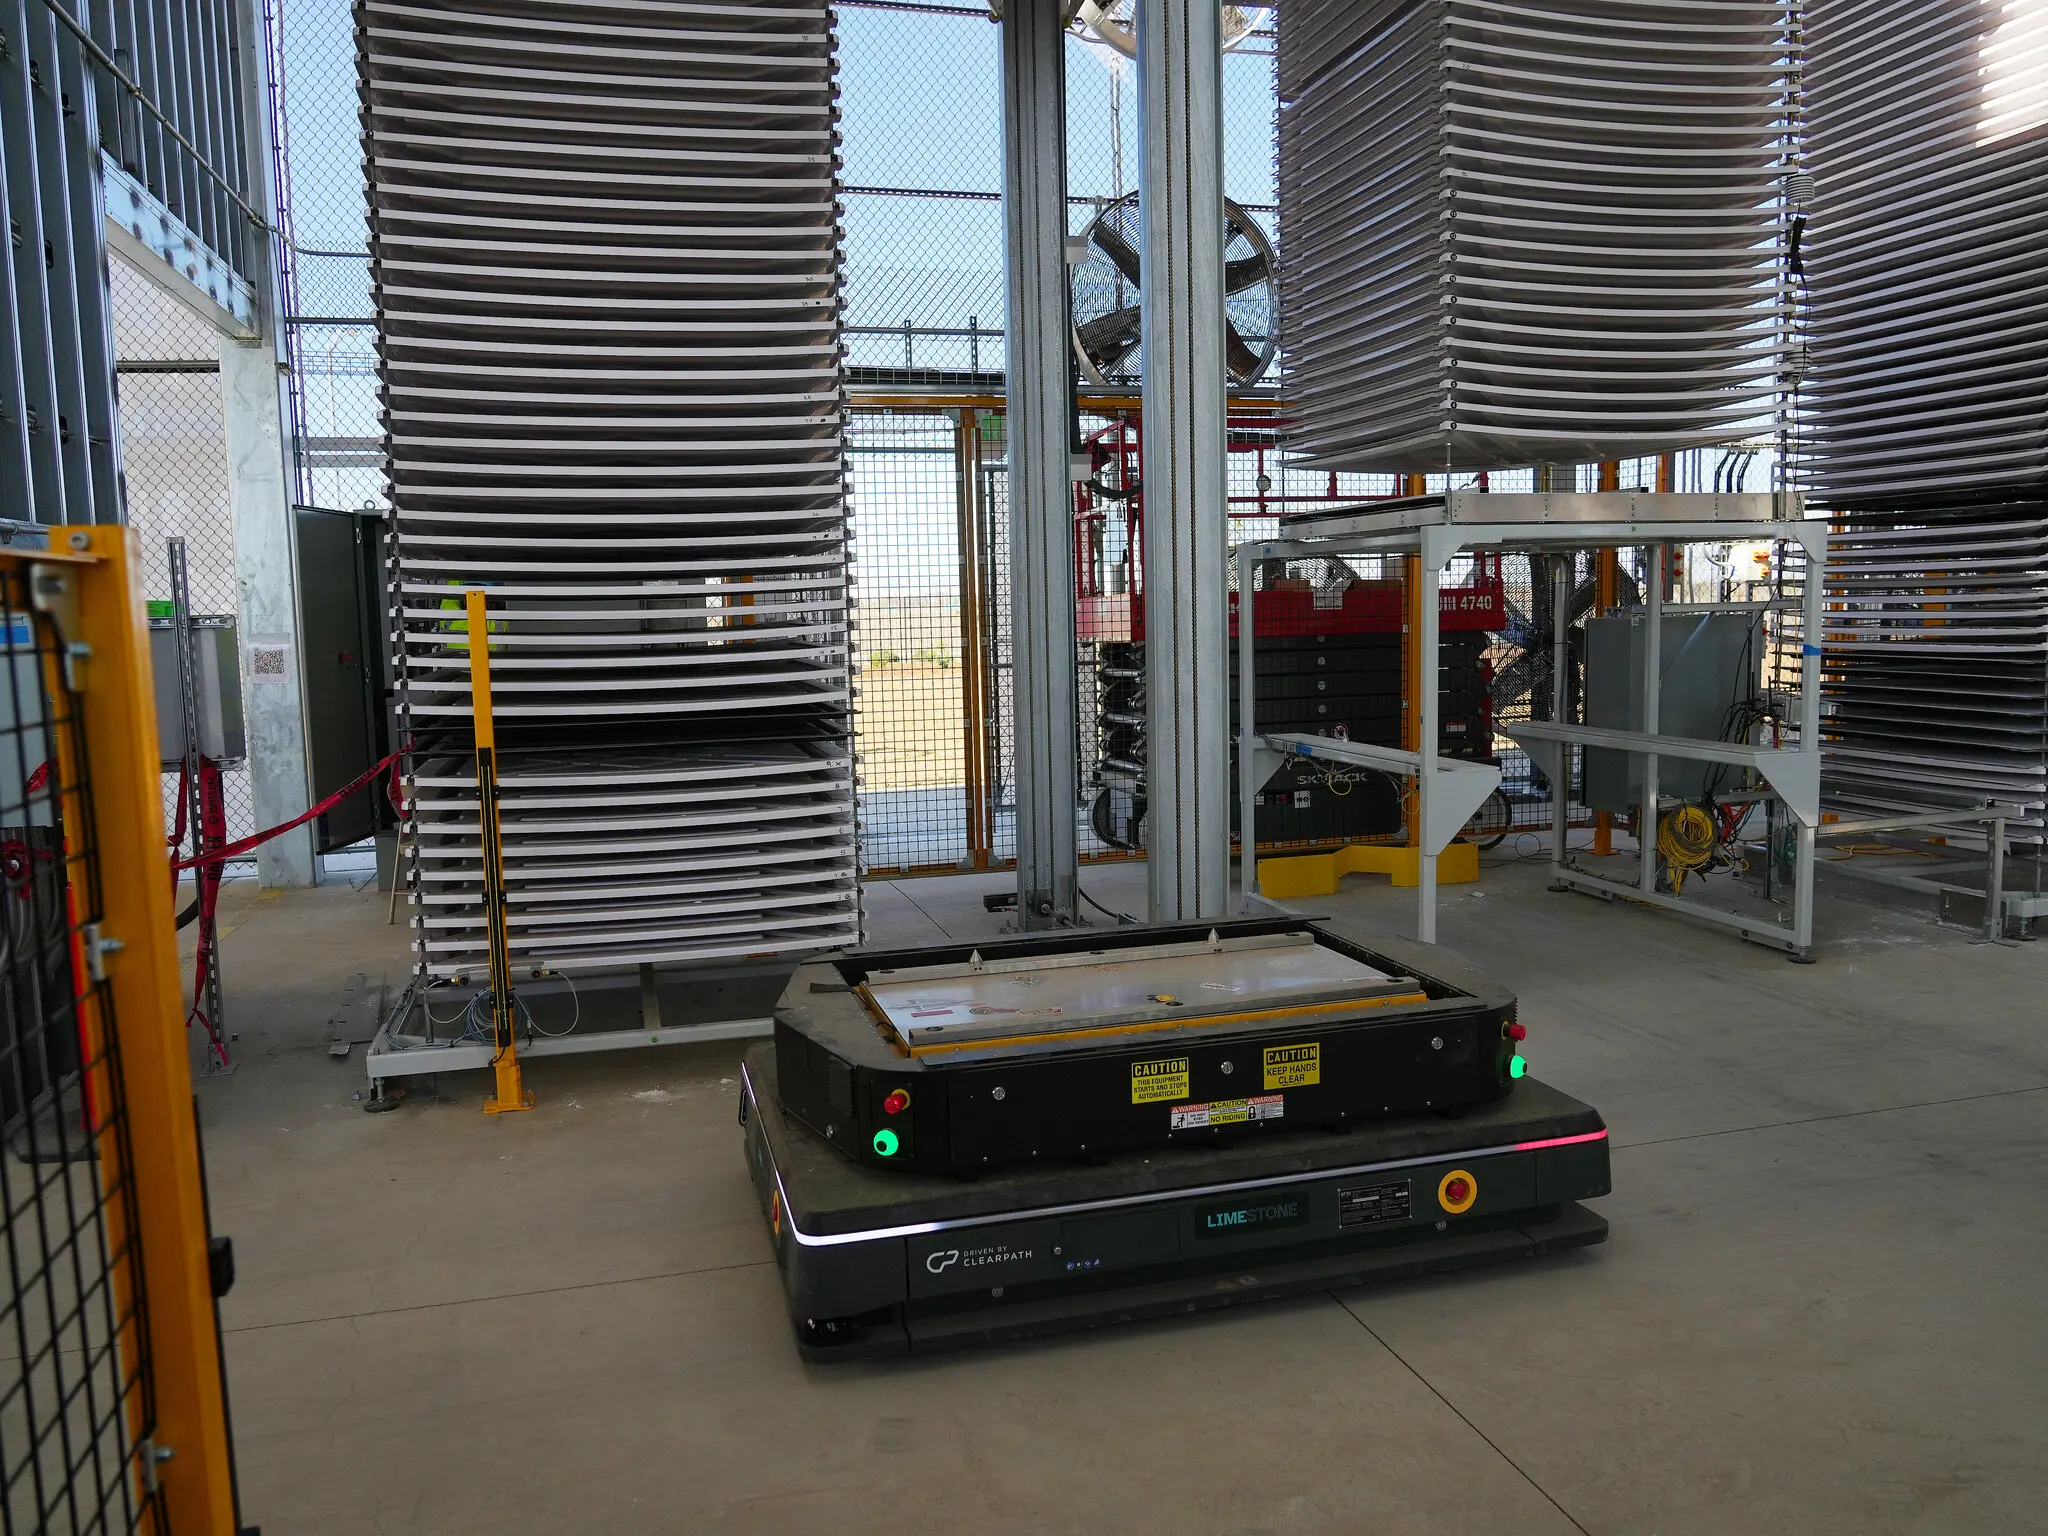 Роботи переносять оксид кальцію на великих тацях до стелажів, де їх виставляють на відкрите повітря. Фото: The New York Times